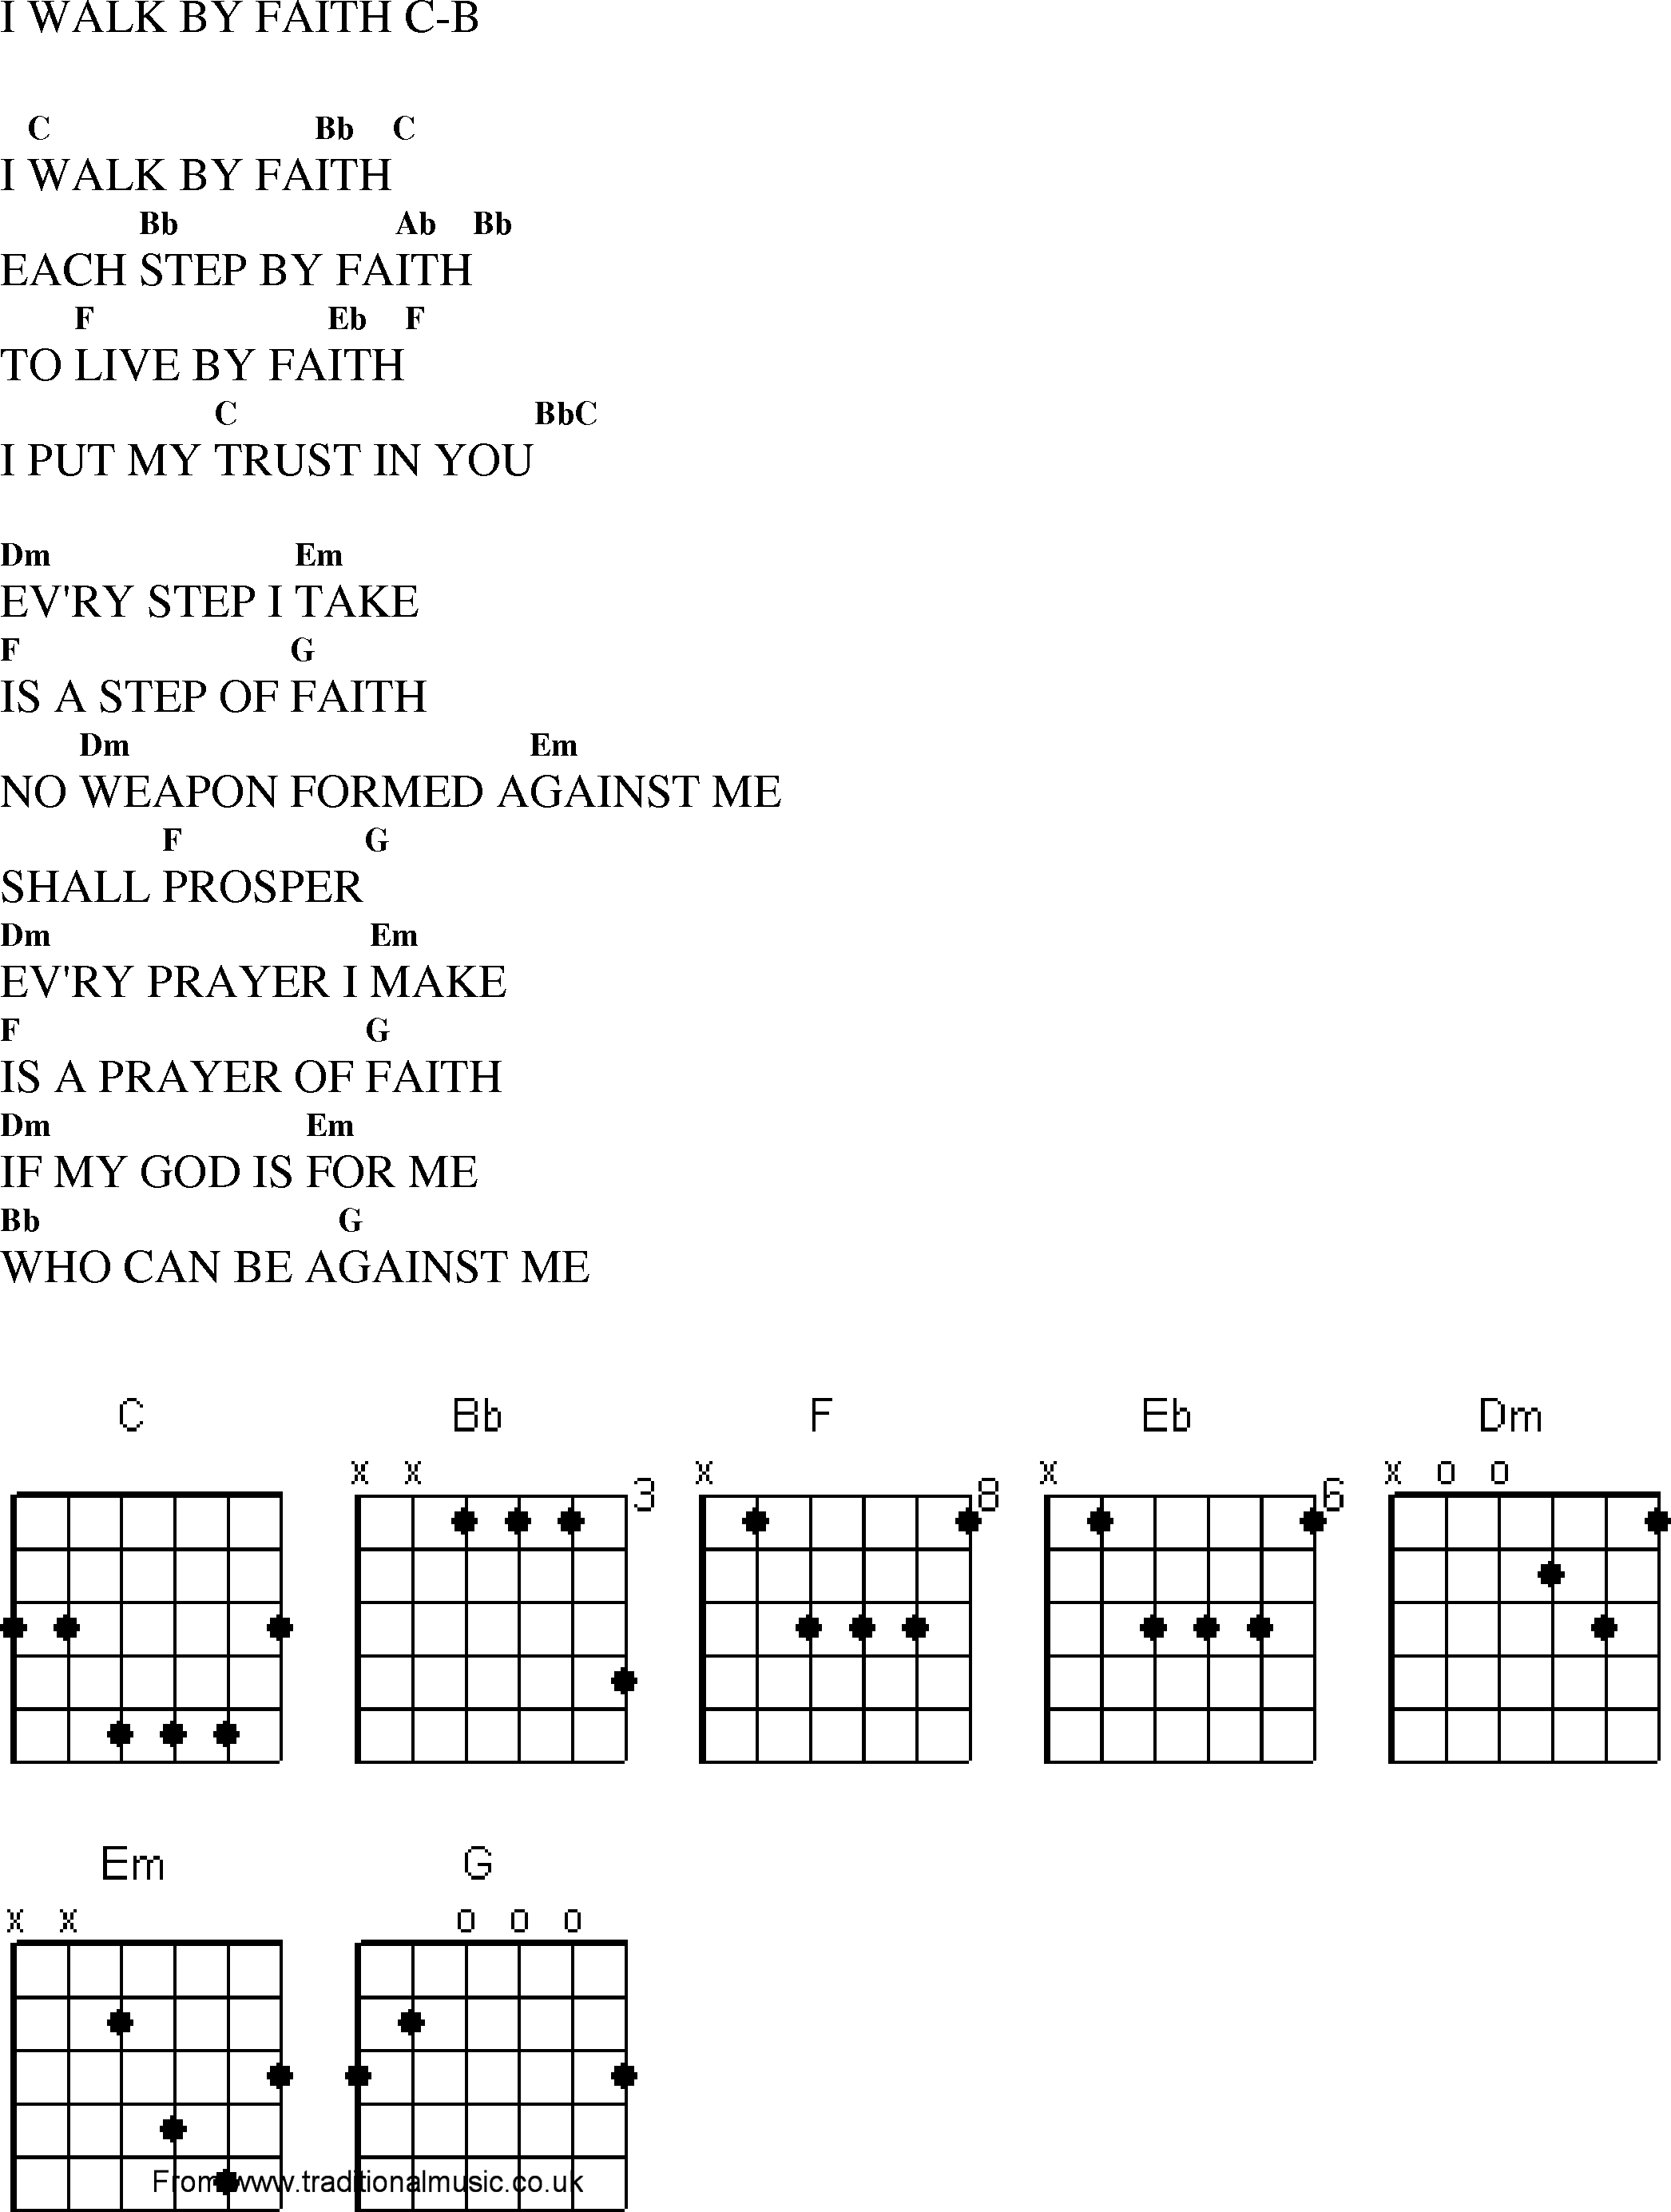 Gospel Song: i_walk_by_faith, lyrics and chords.